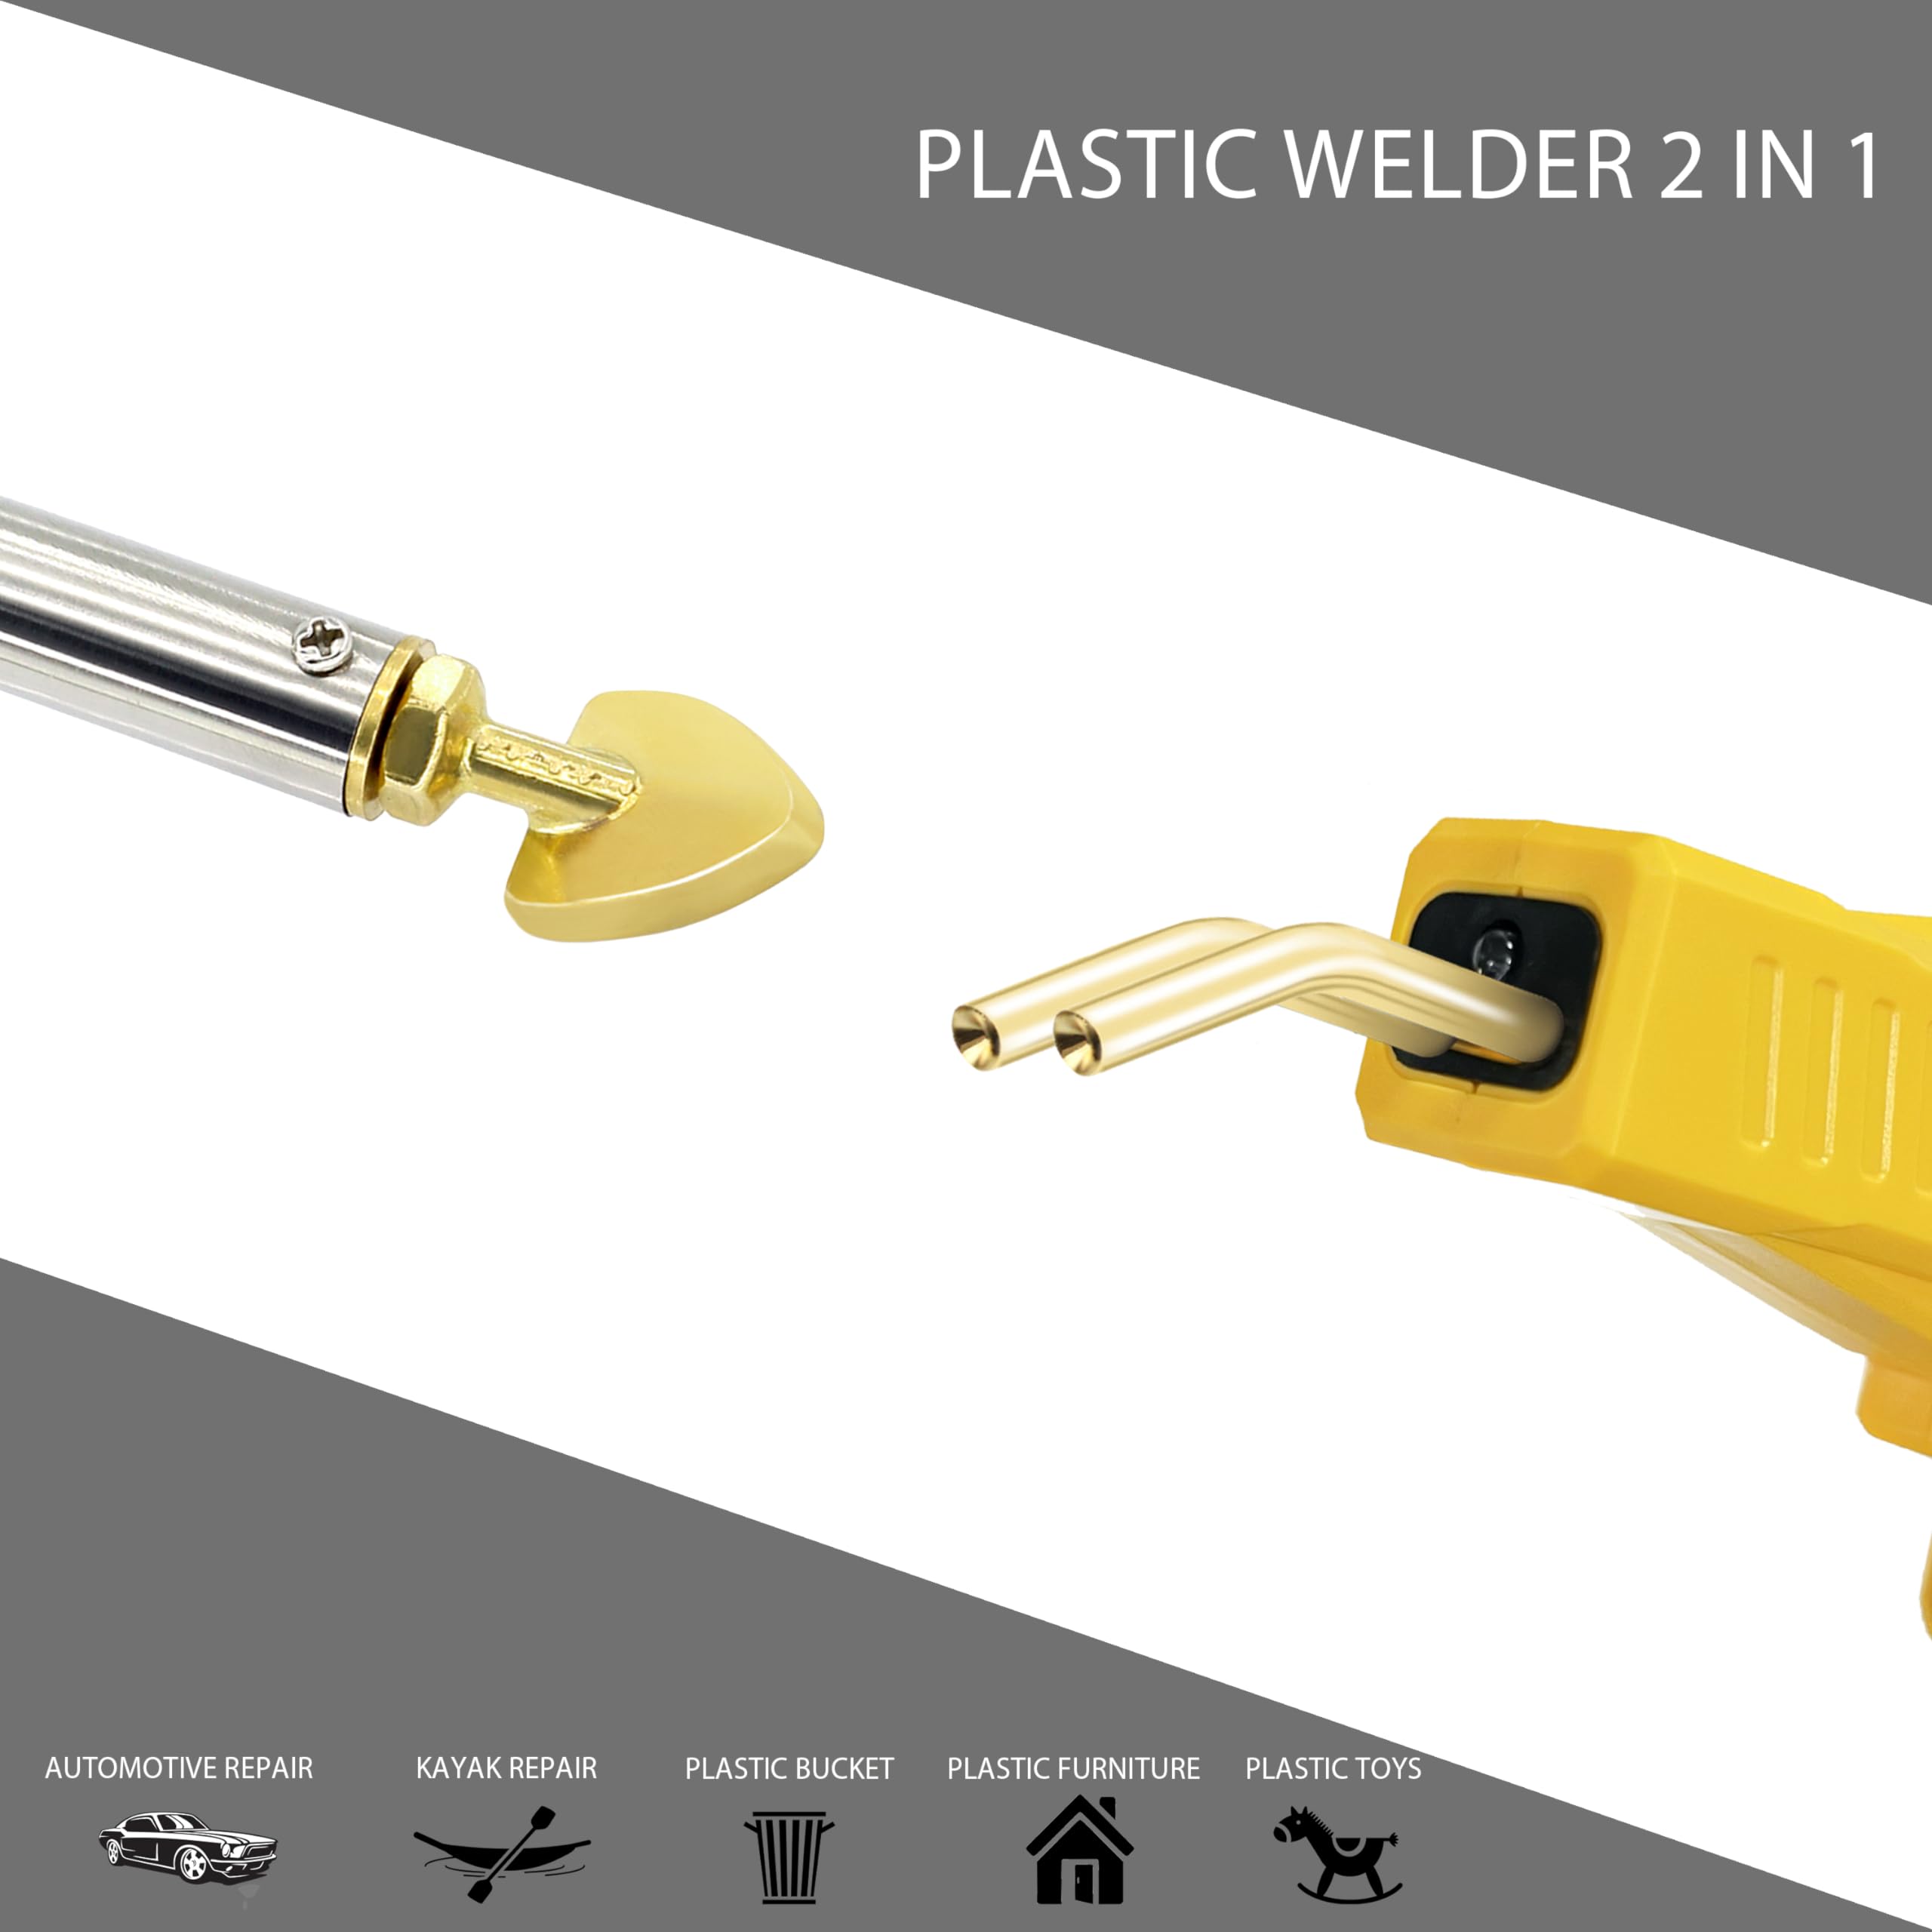 RXXXWELD Plastic Welder, 2 in 1 Plastic Welding Kit, Hot Stapler Plastic Repair Kit For Car Bumper Cracks, Kayaks, Plastic Toys